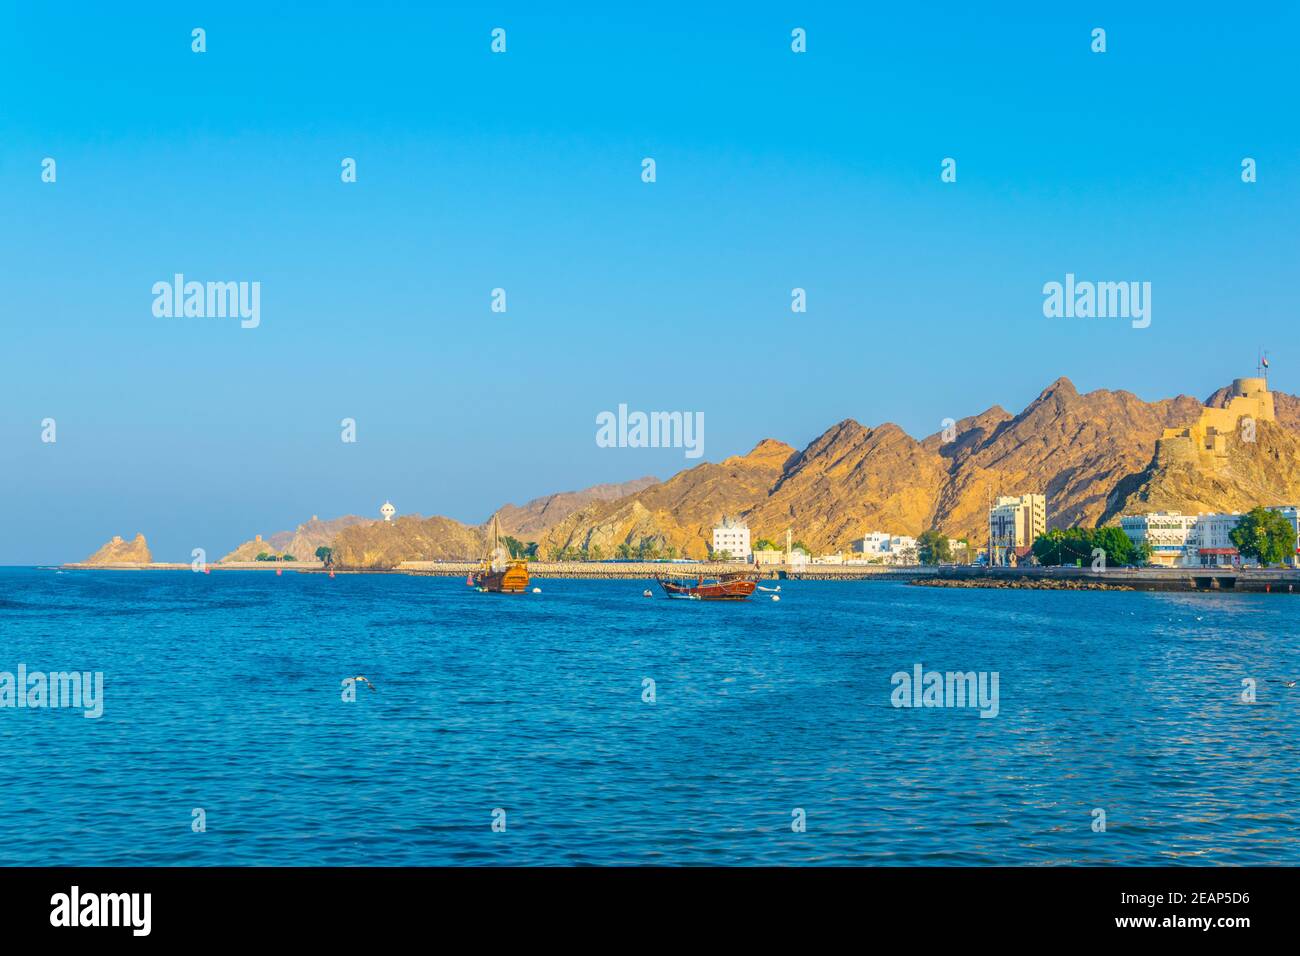 Deux dhuws - des navires arabes traditionnels - se dirigent vers la mer depuis la partie de Muttrah de Muscat dominée par un fort sur une colline, Oman. Banque D'Images